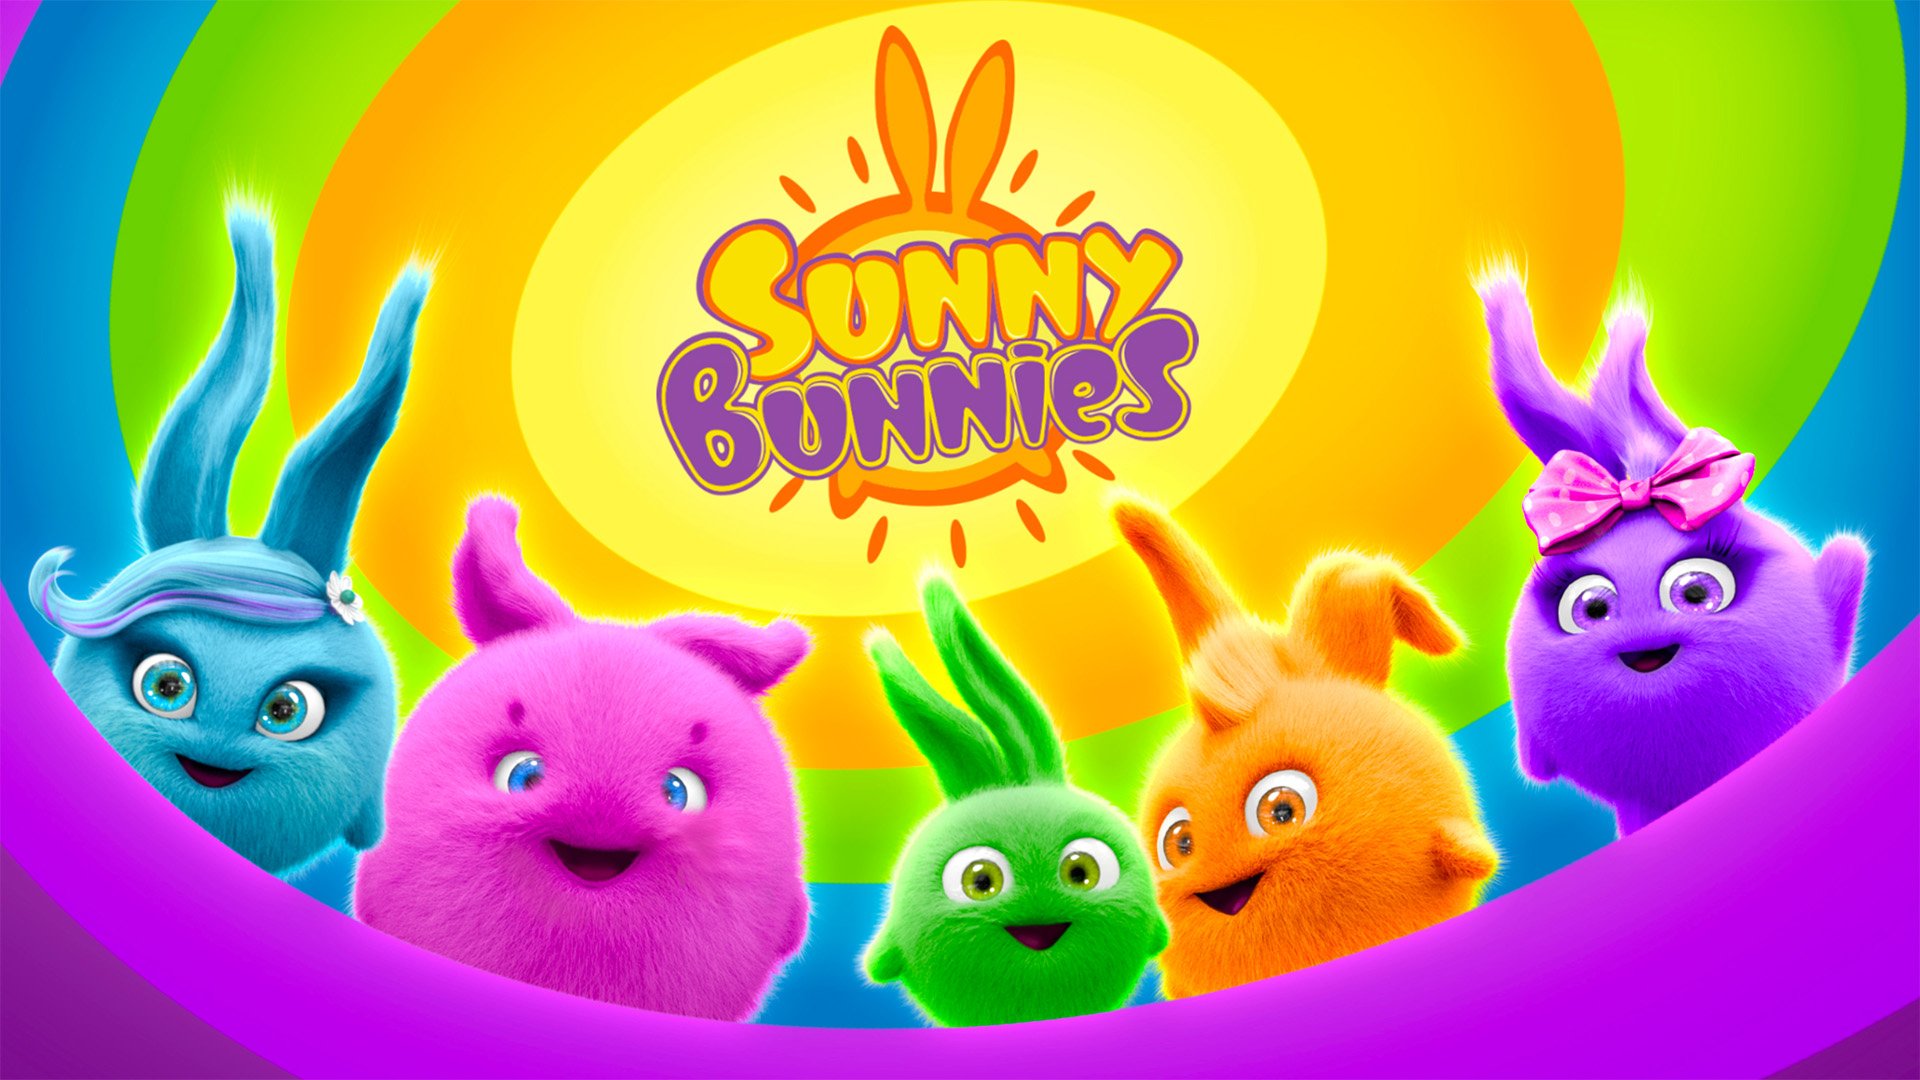 Coloring book sunny bunnies все открыто. Солнечный зайчик. Солнечные зайчики Sunny Bunnies игрушки.